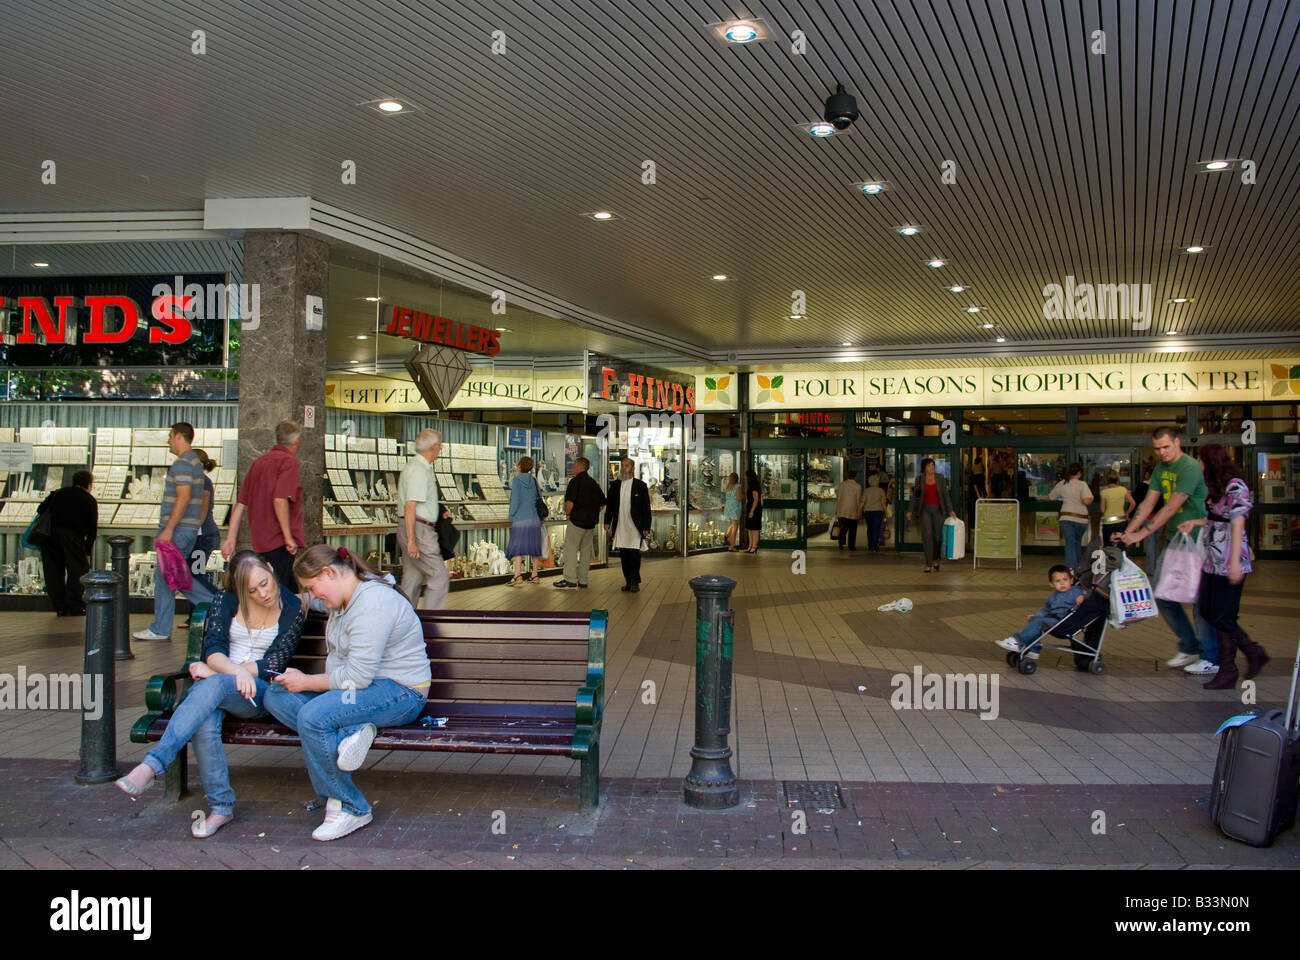 Vier Jahreszeiten-Einkaufszentrum, Mansfield, Notts Stockfoto